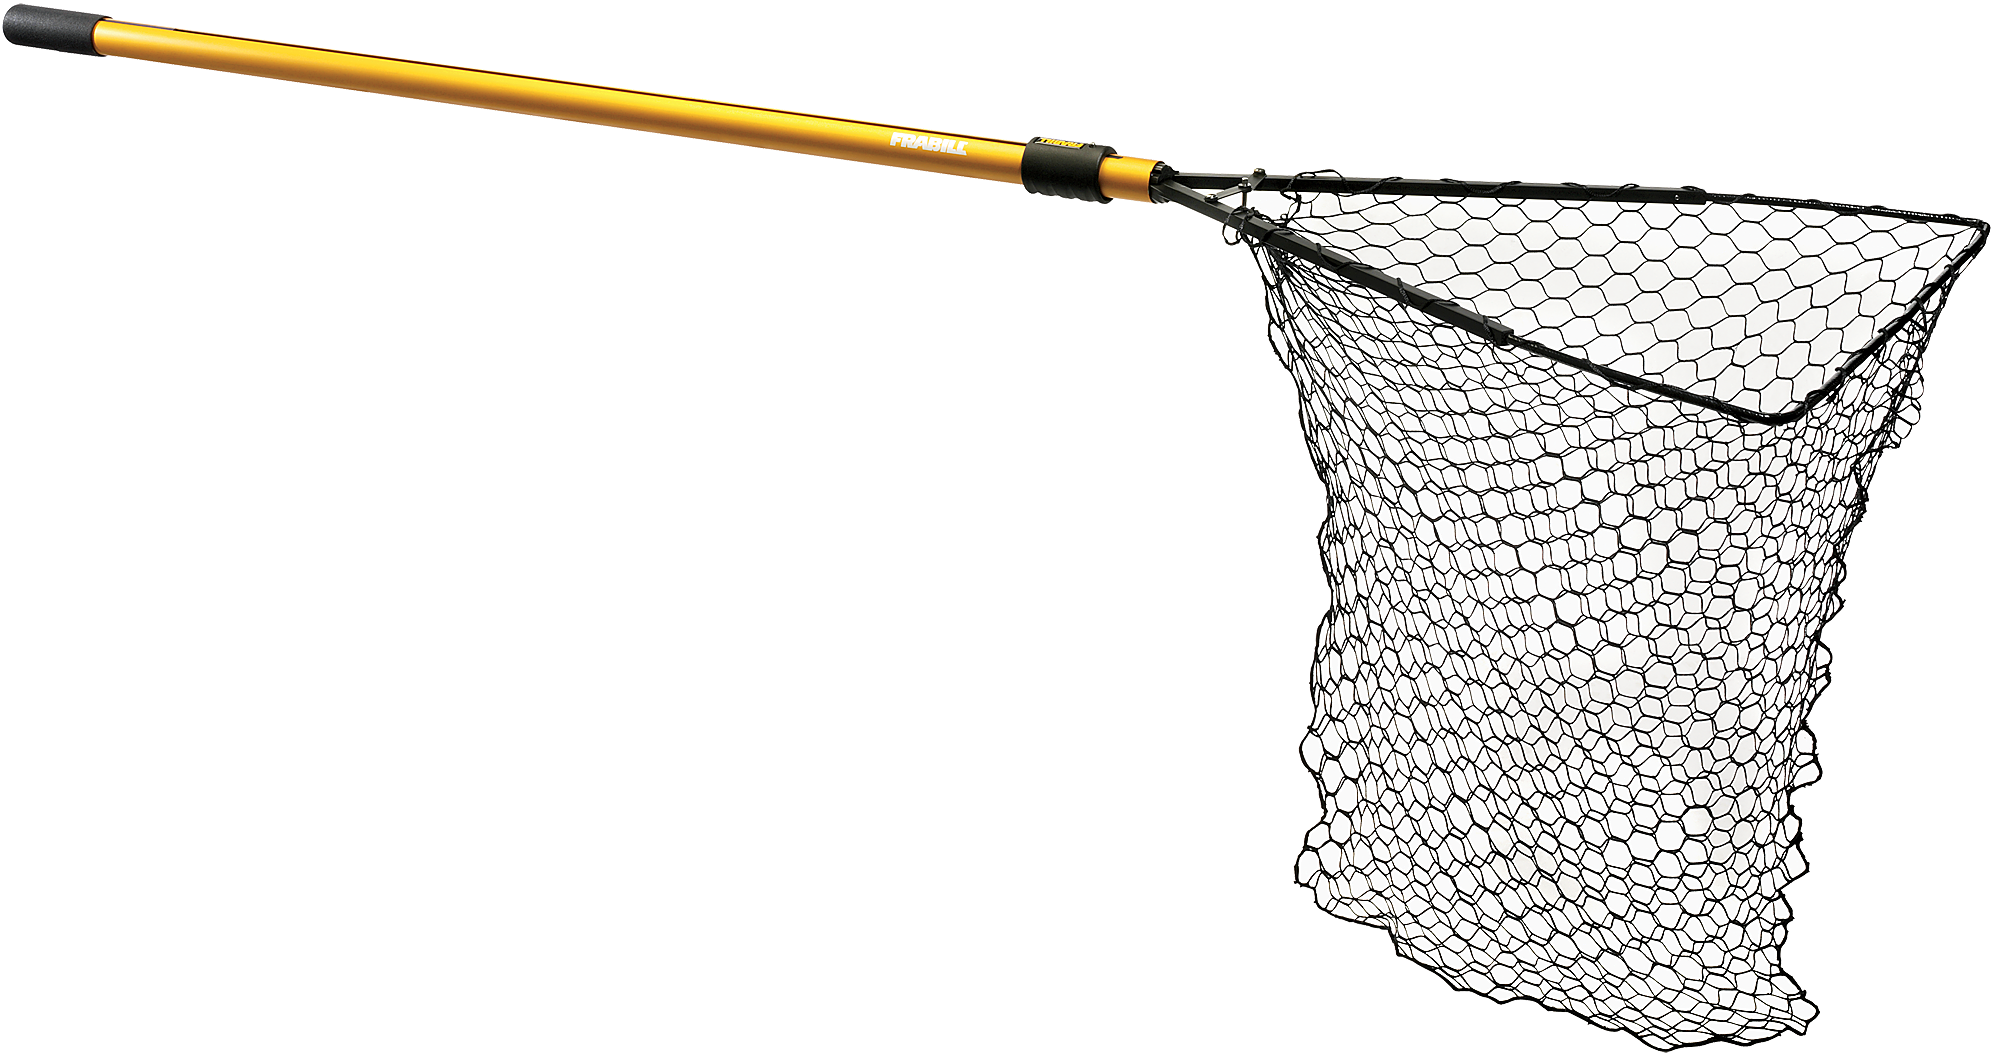 Frabill Umbrella Net